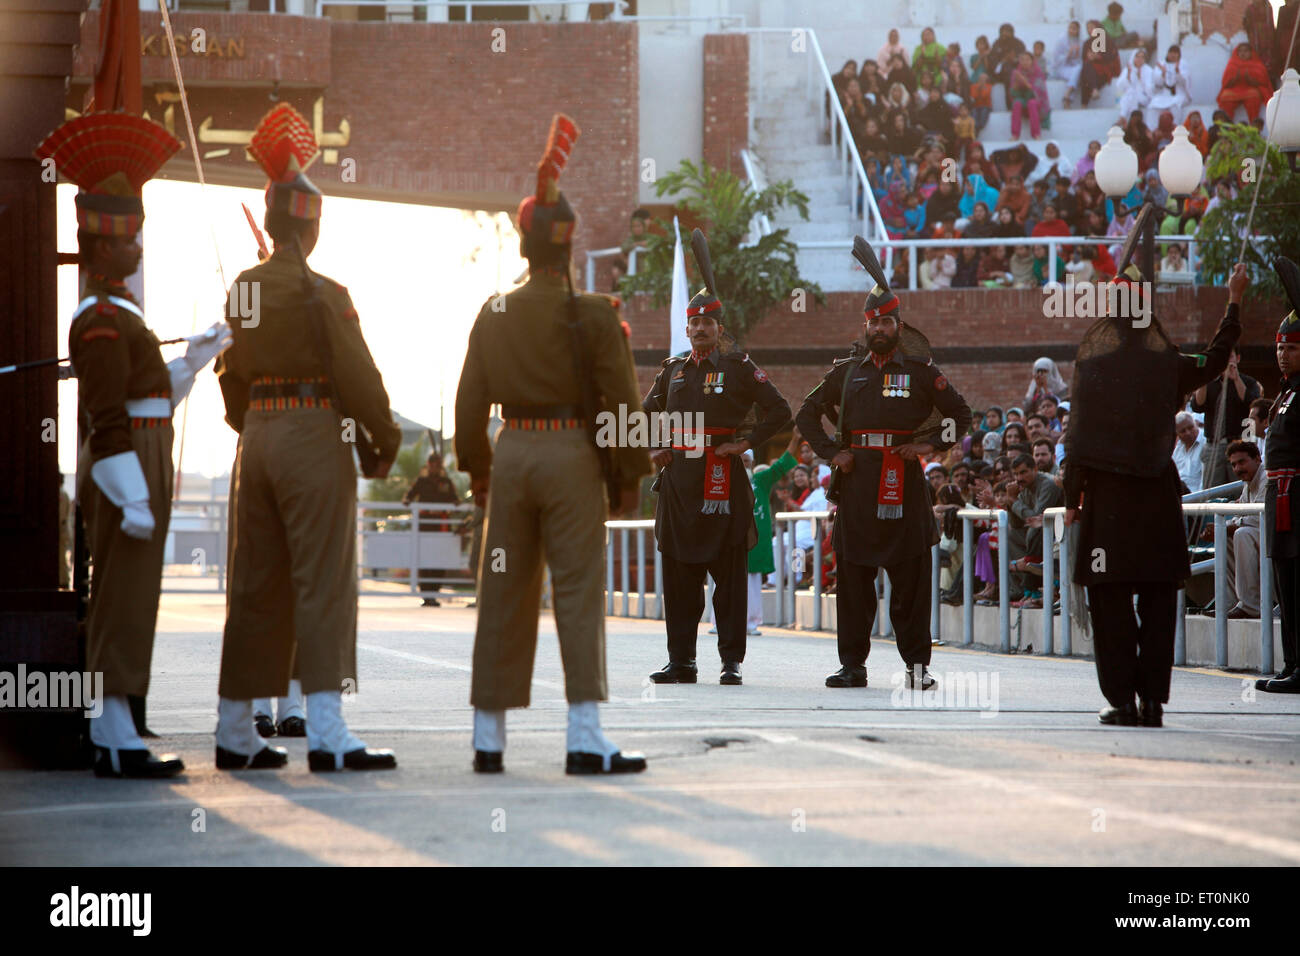 Les soldats de la force de sécurité des frontières indiennes et homologue pakistanais faisant parade avant de commencer à changer de garde Banque D'Images